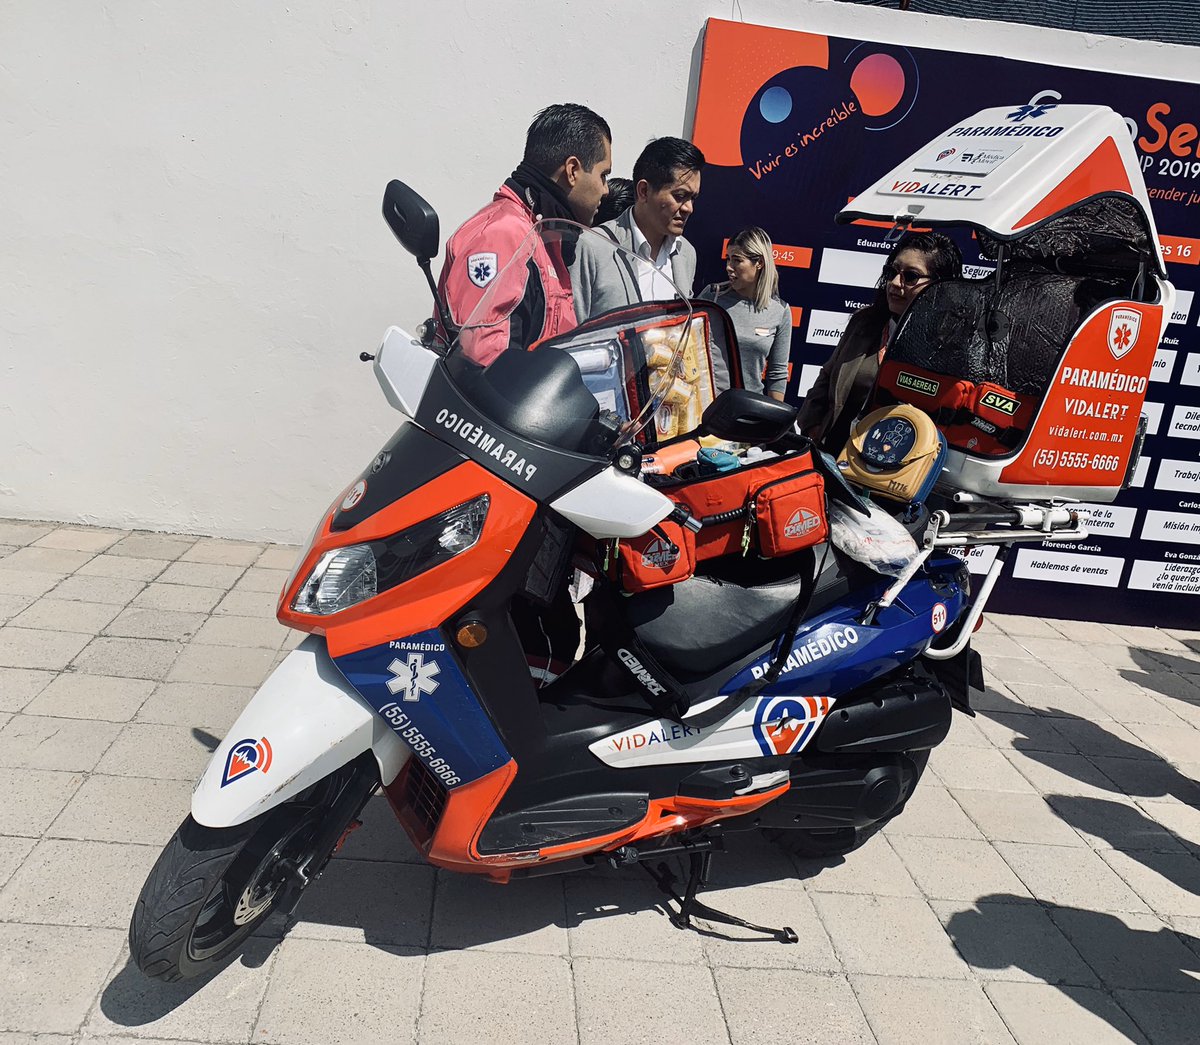 ¡Con @GNPSeguros nuevo apoyo de un paramédico en motocicleta 🏍 con tú seguro de Hogar, Auto y Gastos Médicos Mayores! #NadaEsSeguroTúSeguroSí #GNP #seguros #MédicaMóvil #VidaAlert